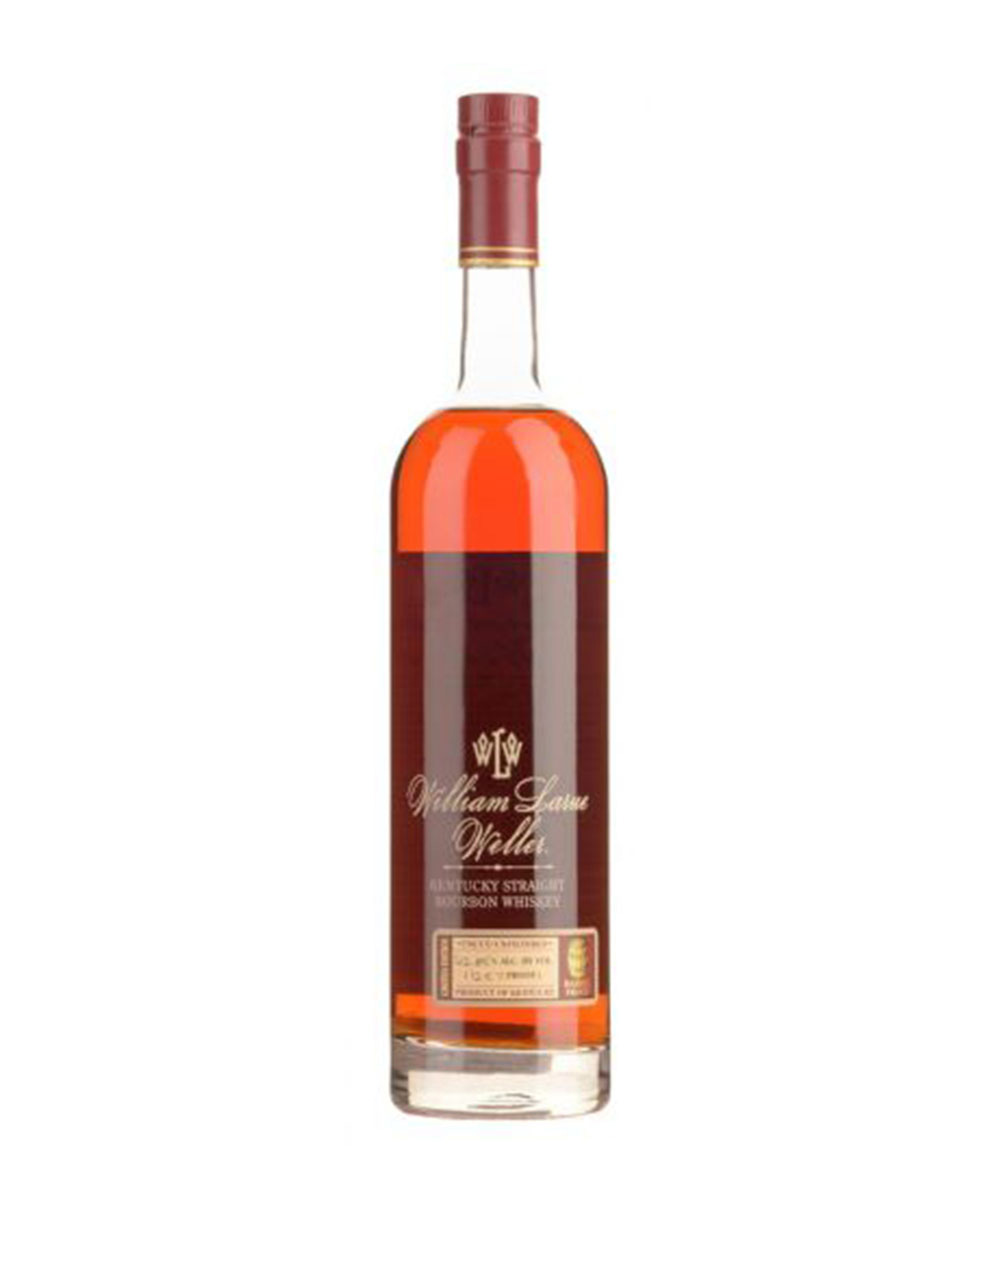 Glenmorangie Spios Private Edition Single Malt Scotch Whisky